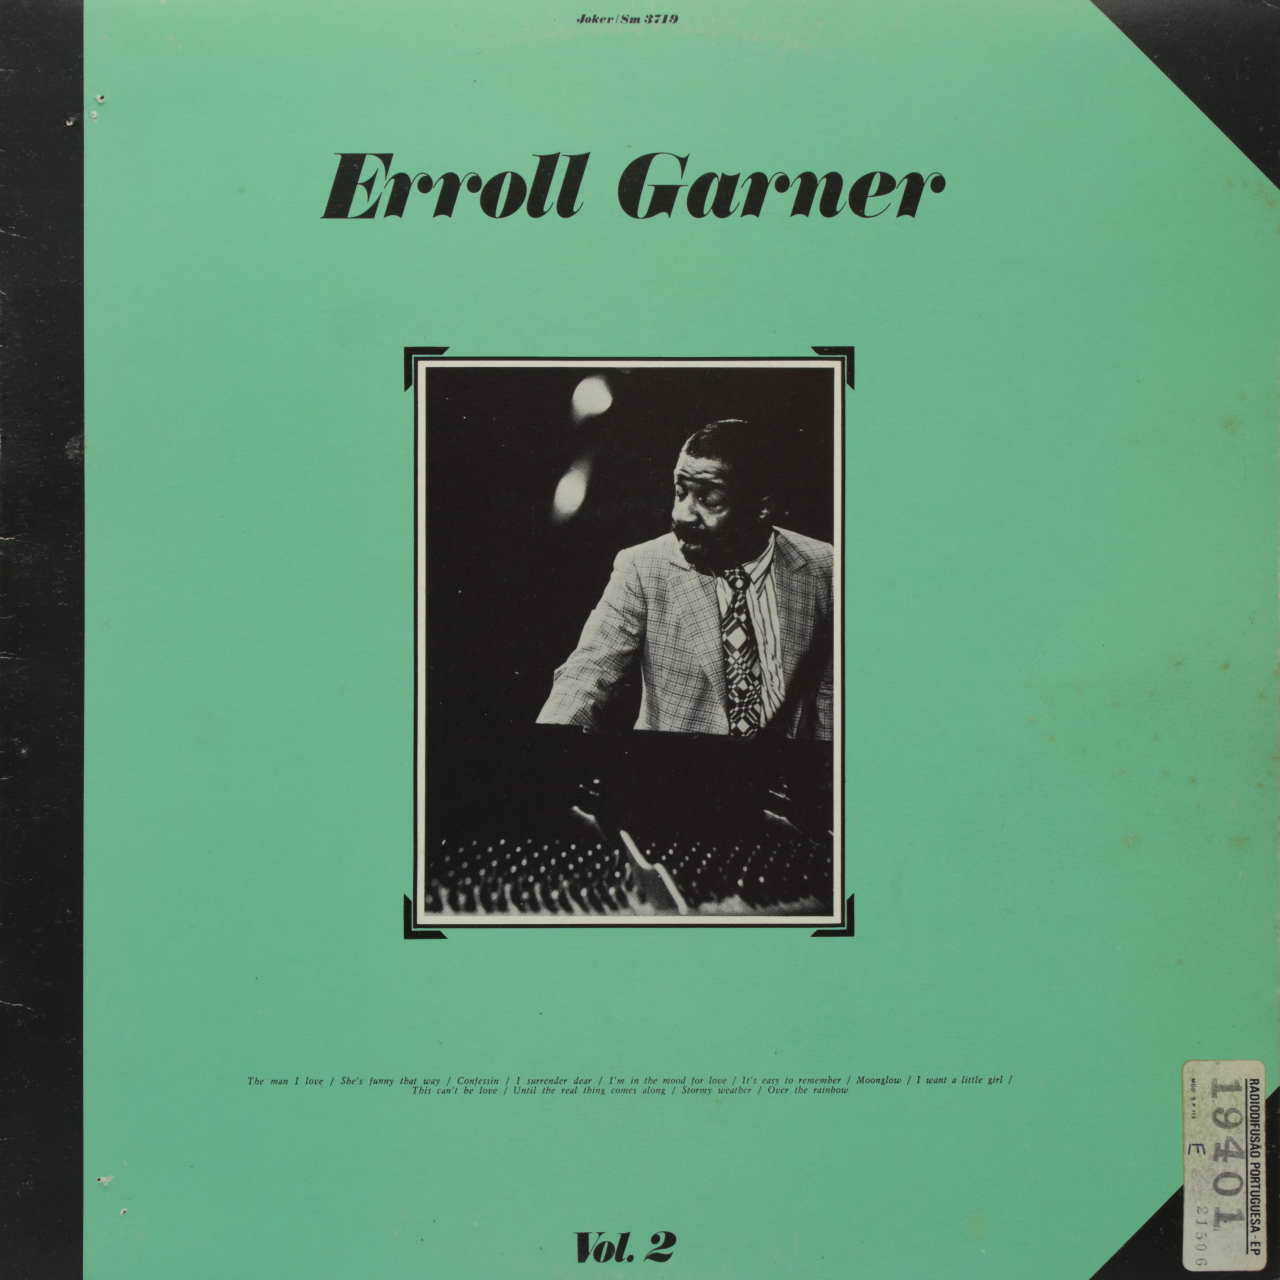 Erroll Garner Vol. 2